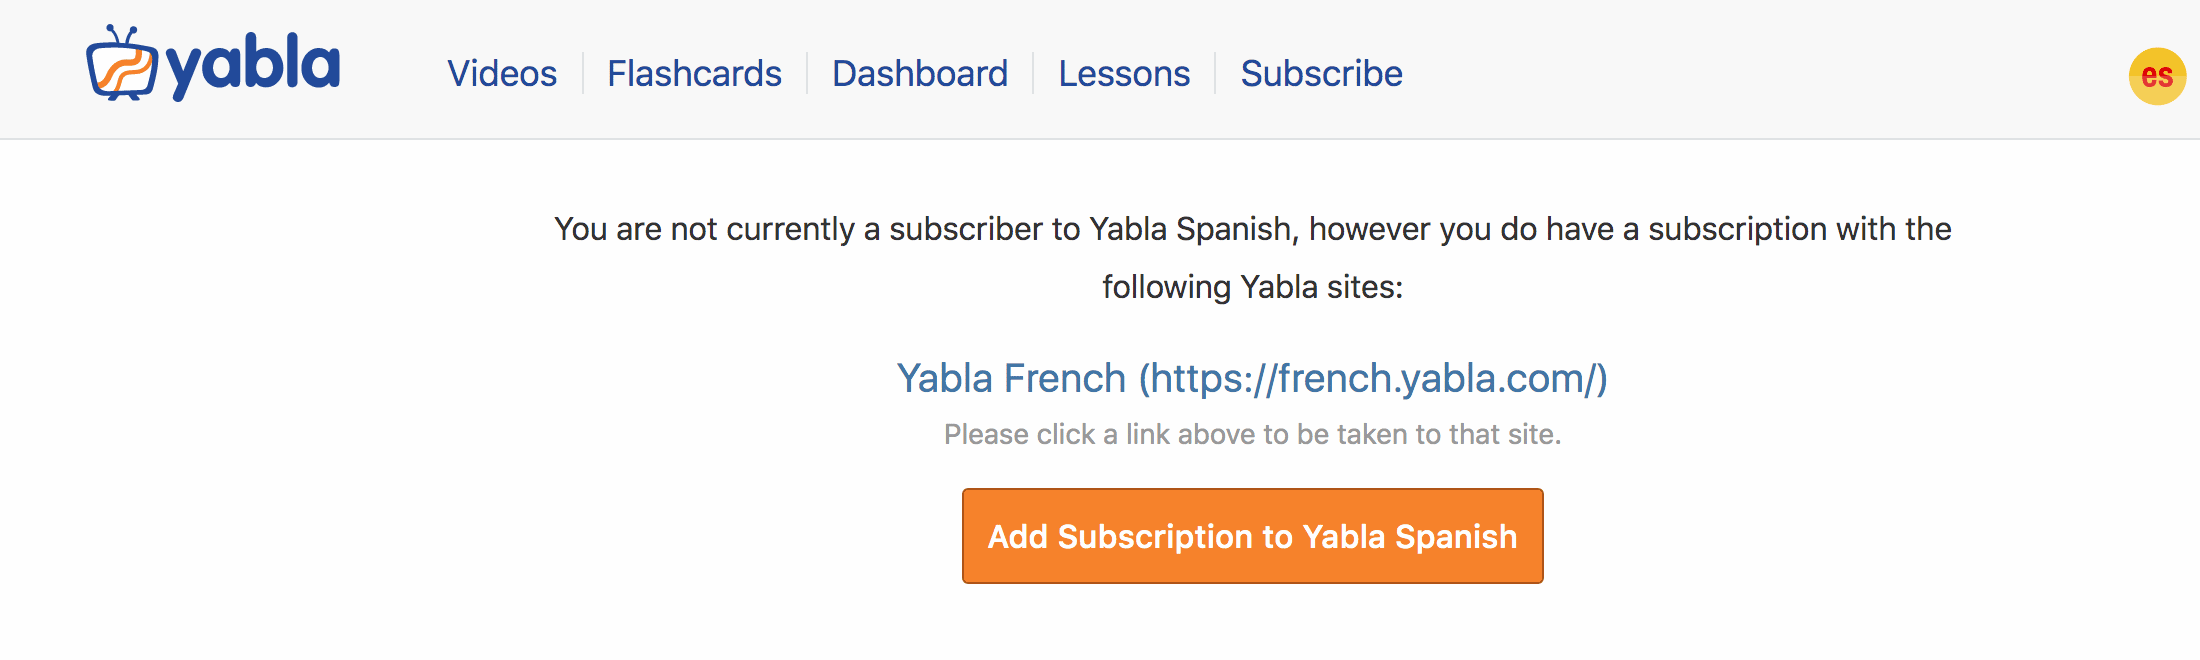 Videos yabla spanish Yabla